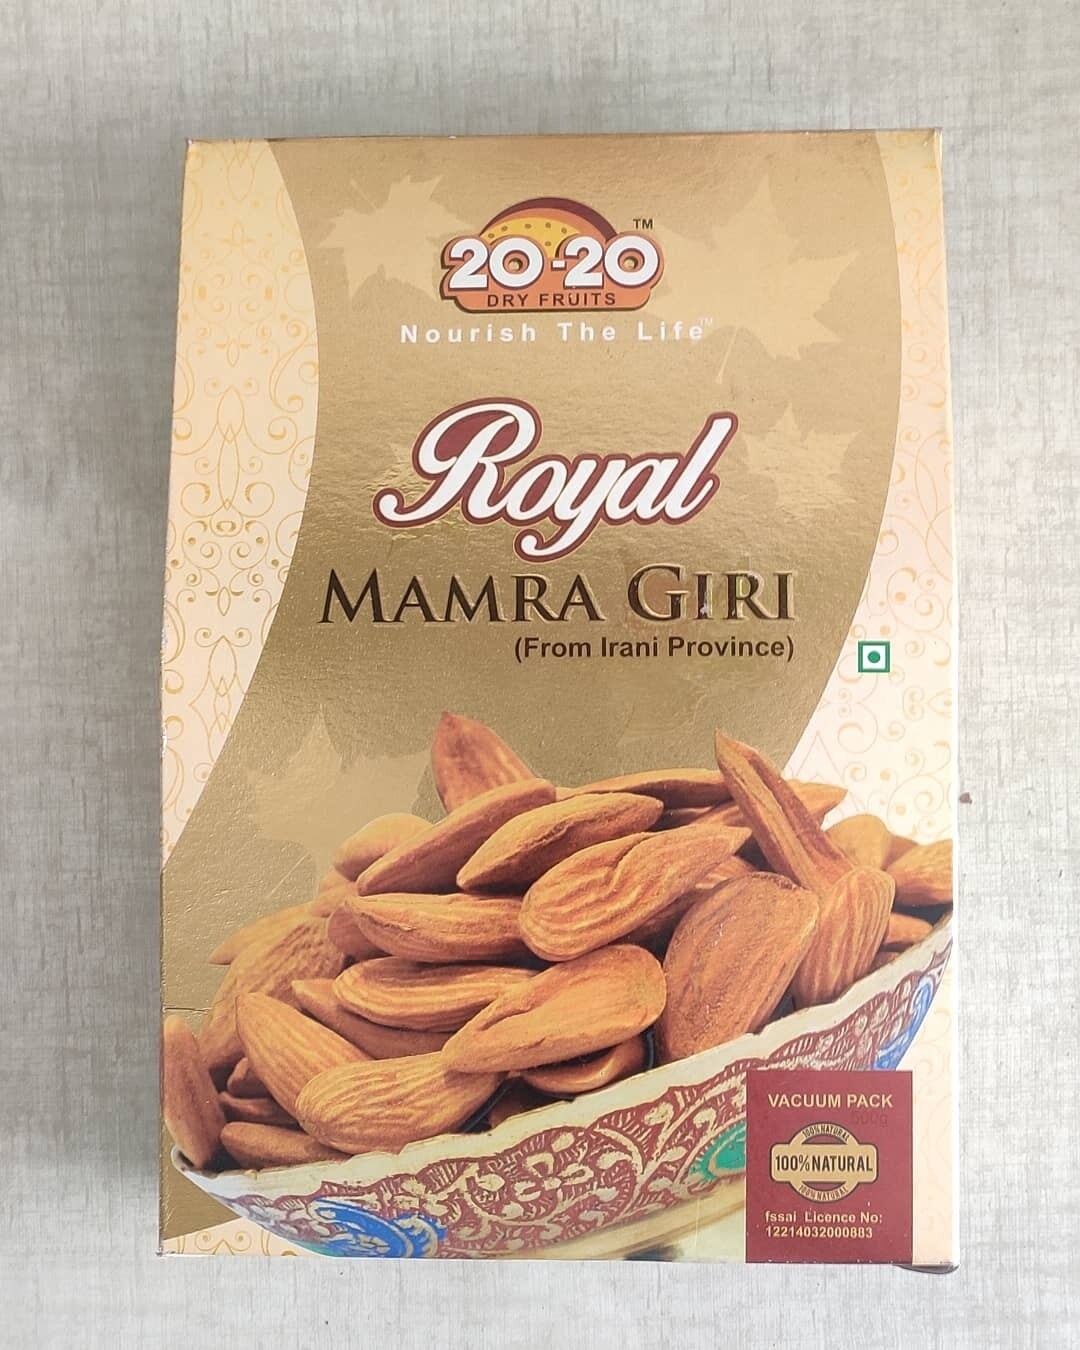 20-20 Dry fruits Royal Mamra Giri Almond 500g